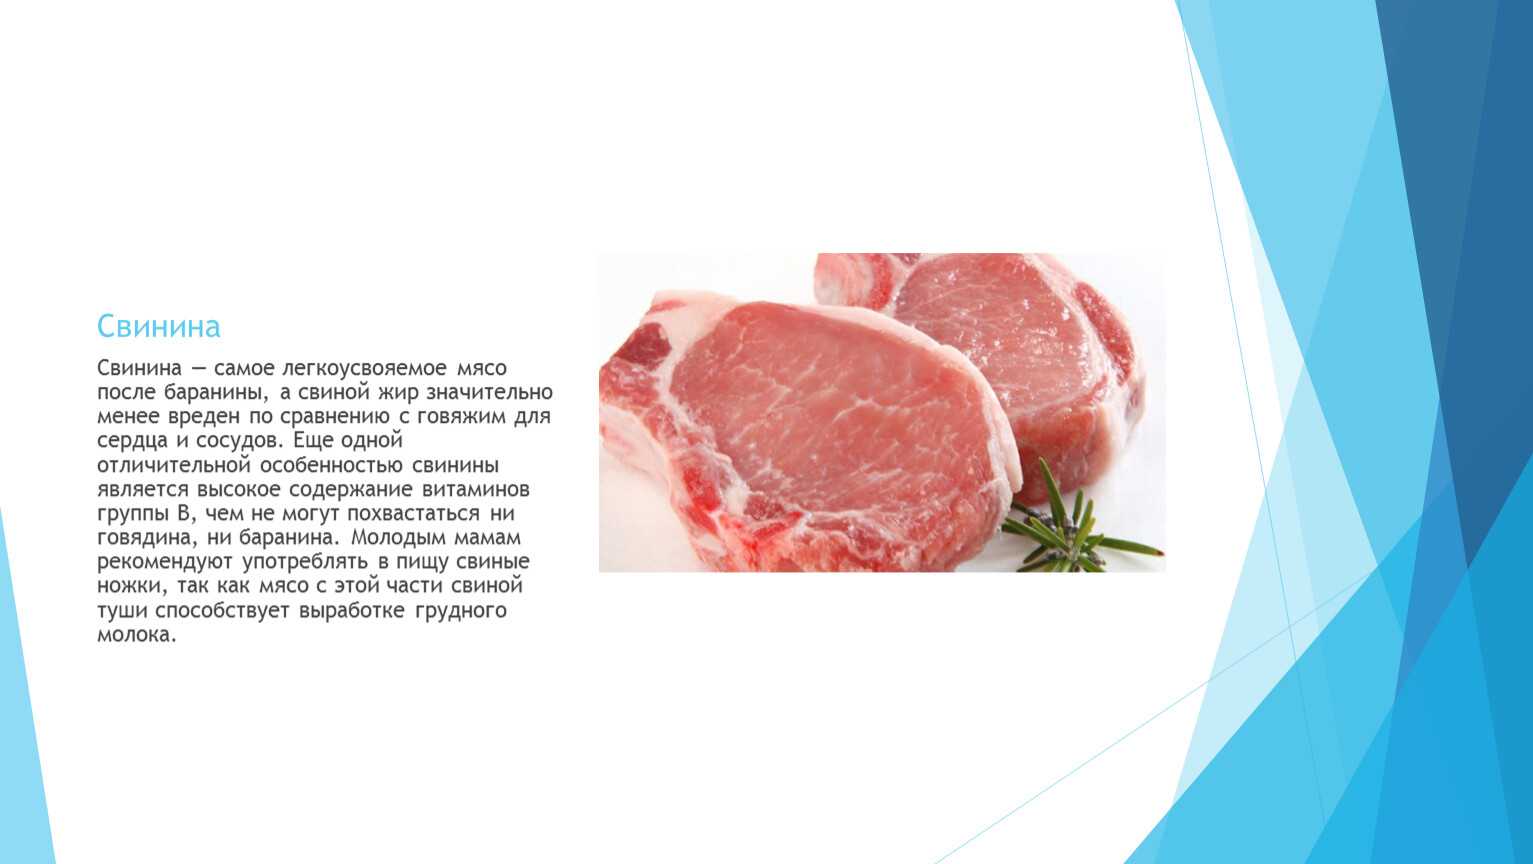 Мясо свиное без жира (филе) — какие витамины содержит